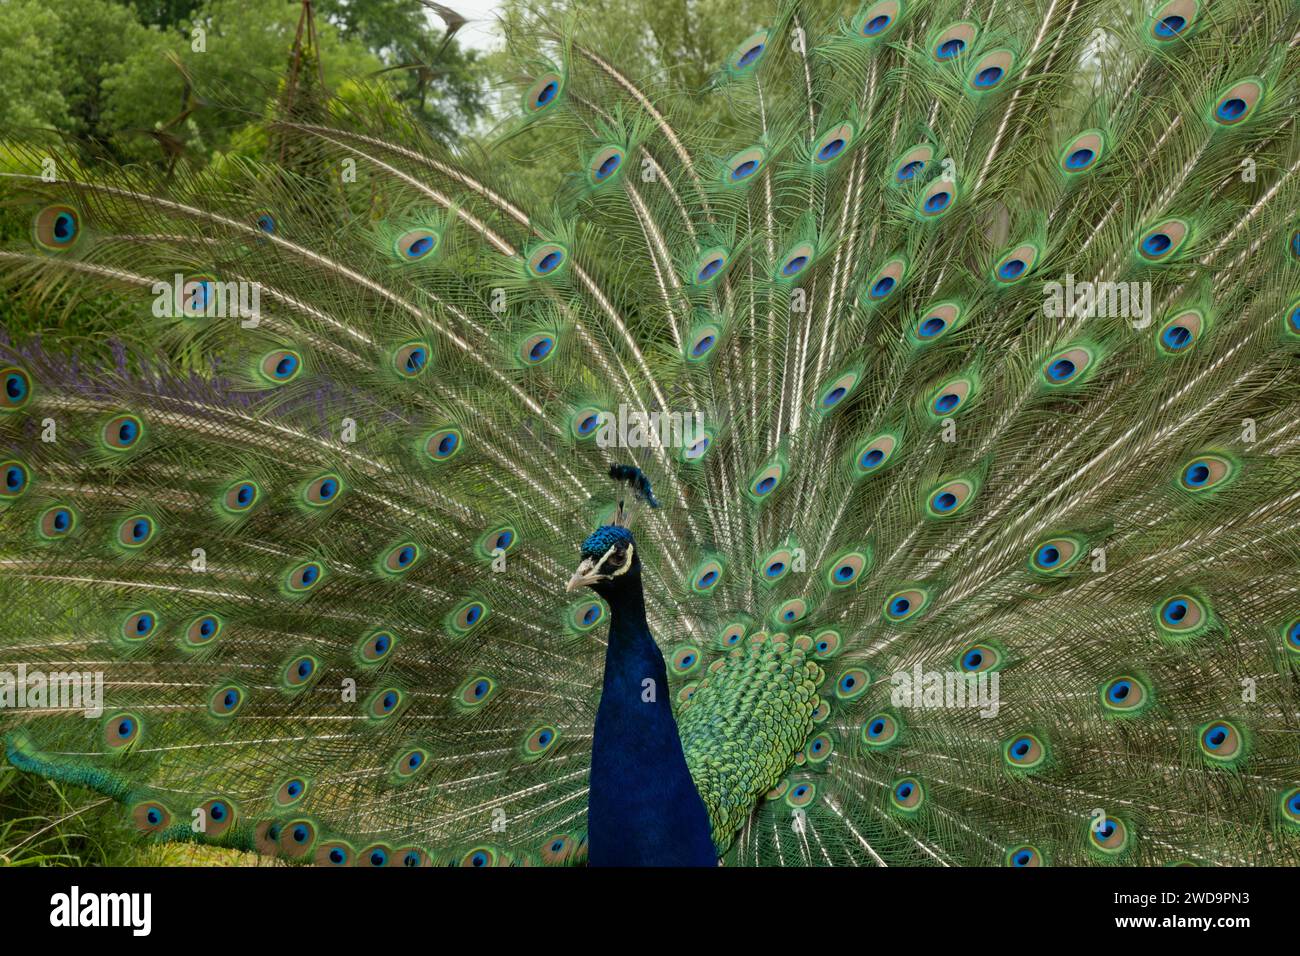 Un paon affiche un éventail extravagant de plumes de queue irisées au milieu d'un feuillage verdoyant. Banque D'Images